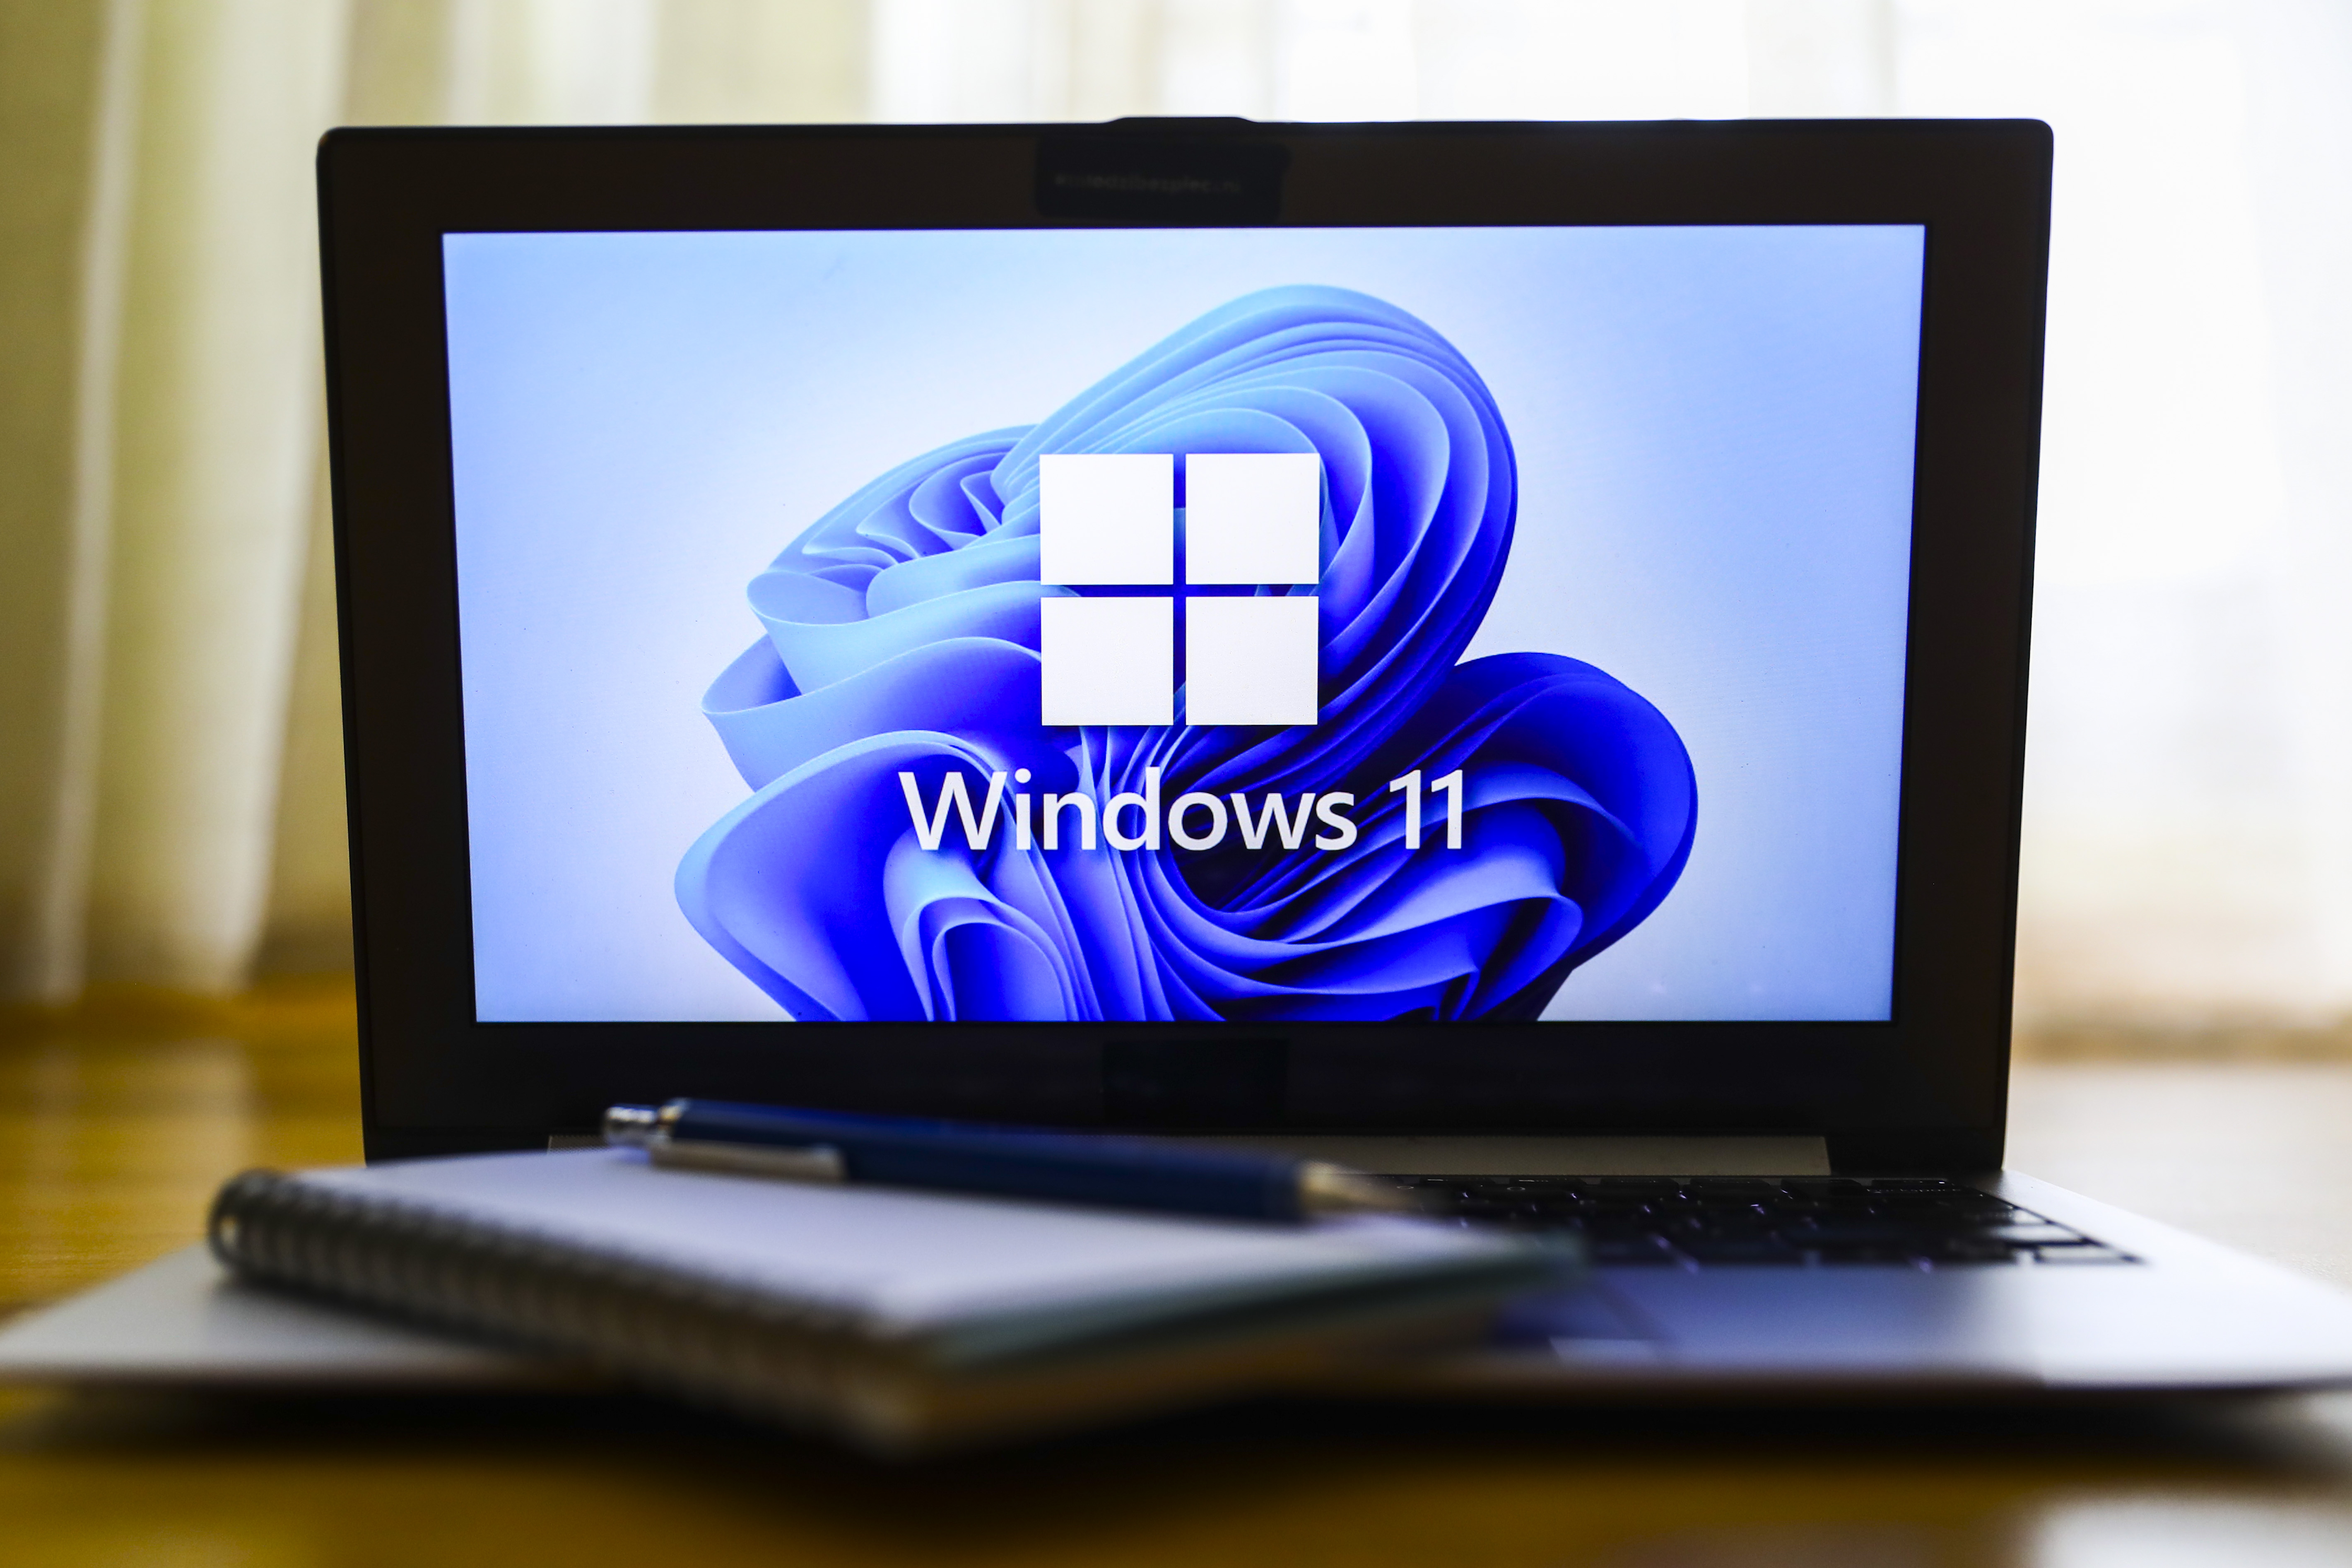 Windows 11 commence à déployer (très lentement) de nouvelles fonctionnalités